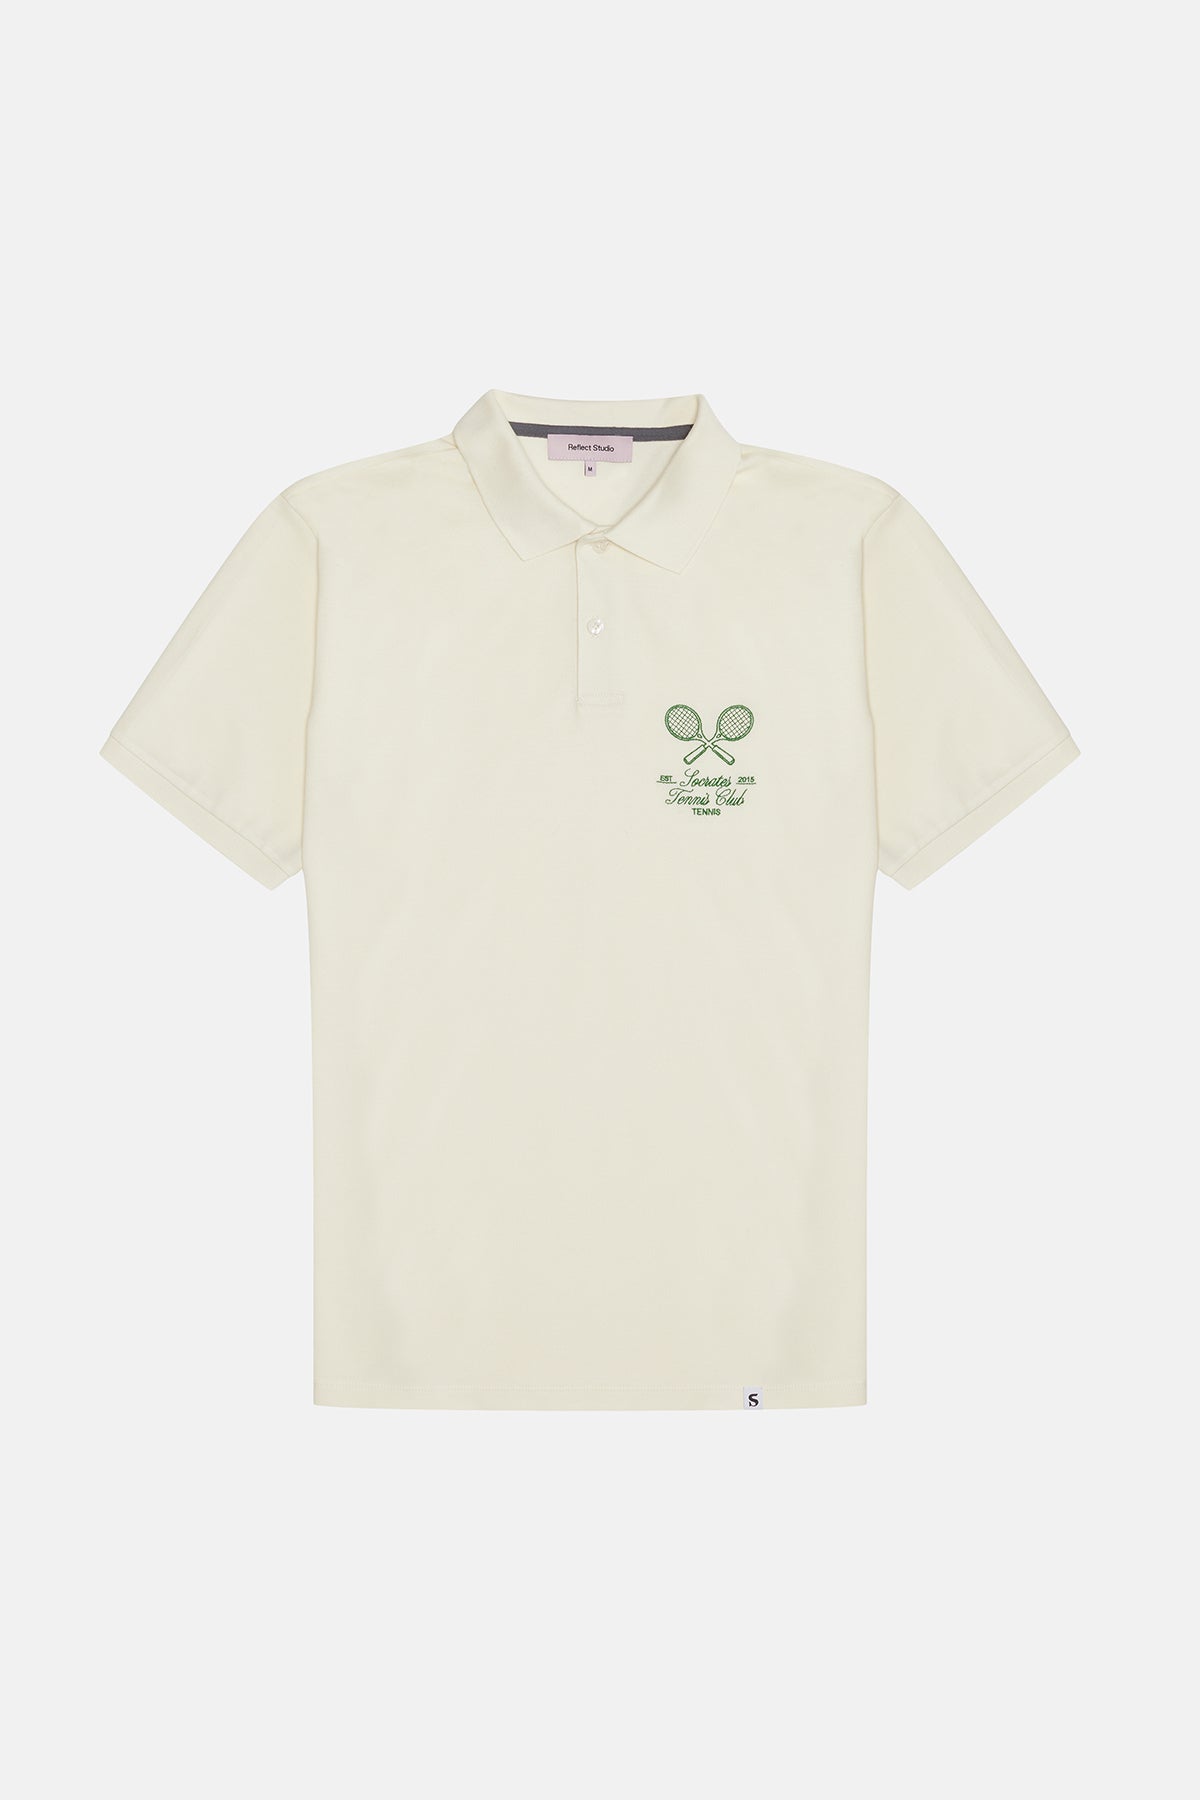 Socrates Tennis Club Polo T-Shirt - Ekru